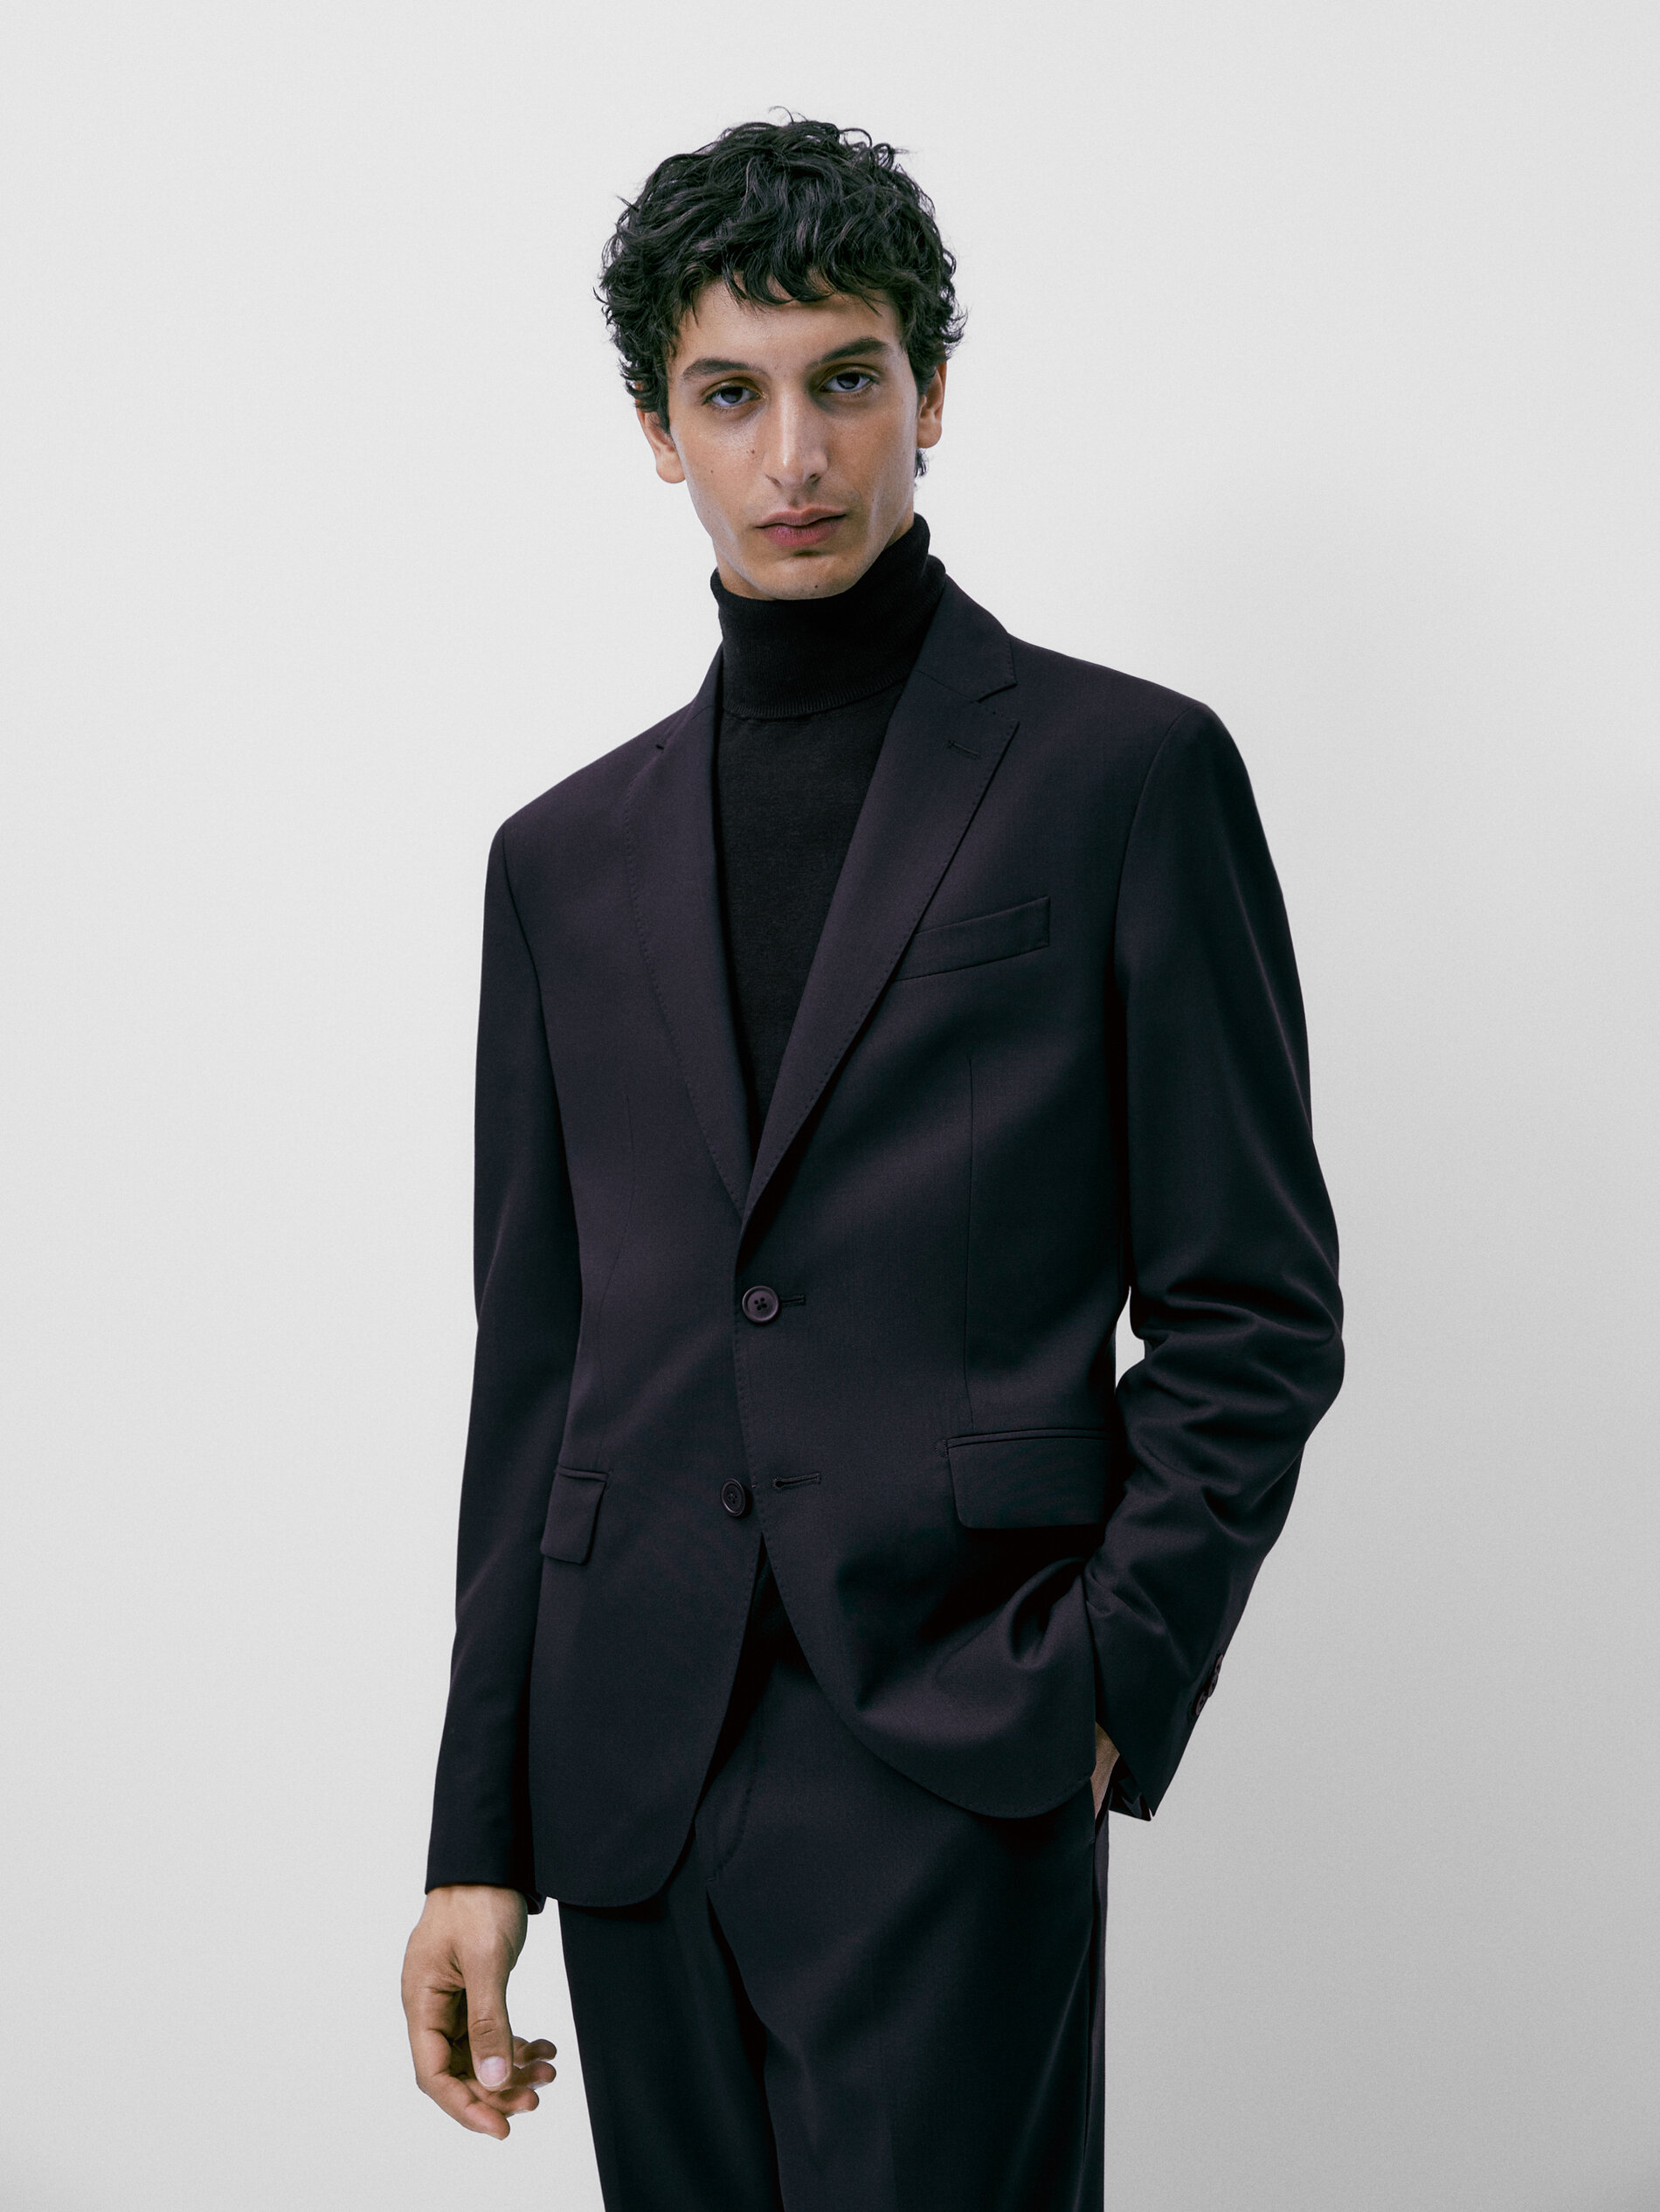 Massimo Dutti Suit Black 40                  EU MEN FASHION Suits & Sets Elegant discount 98% 